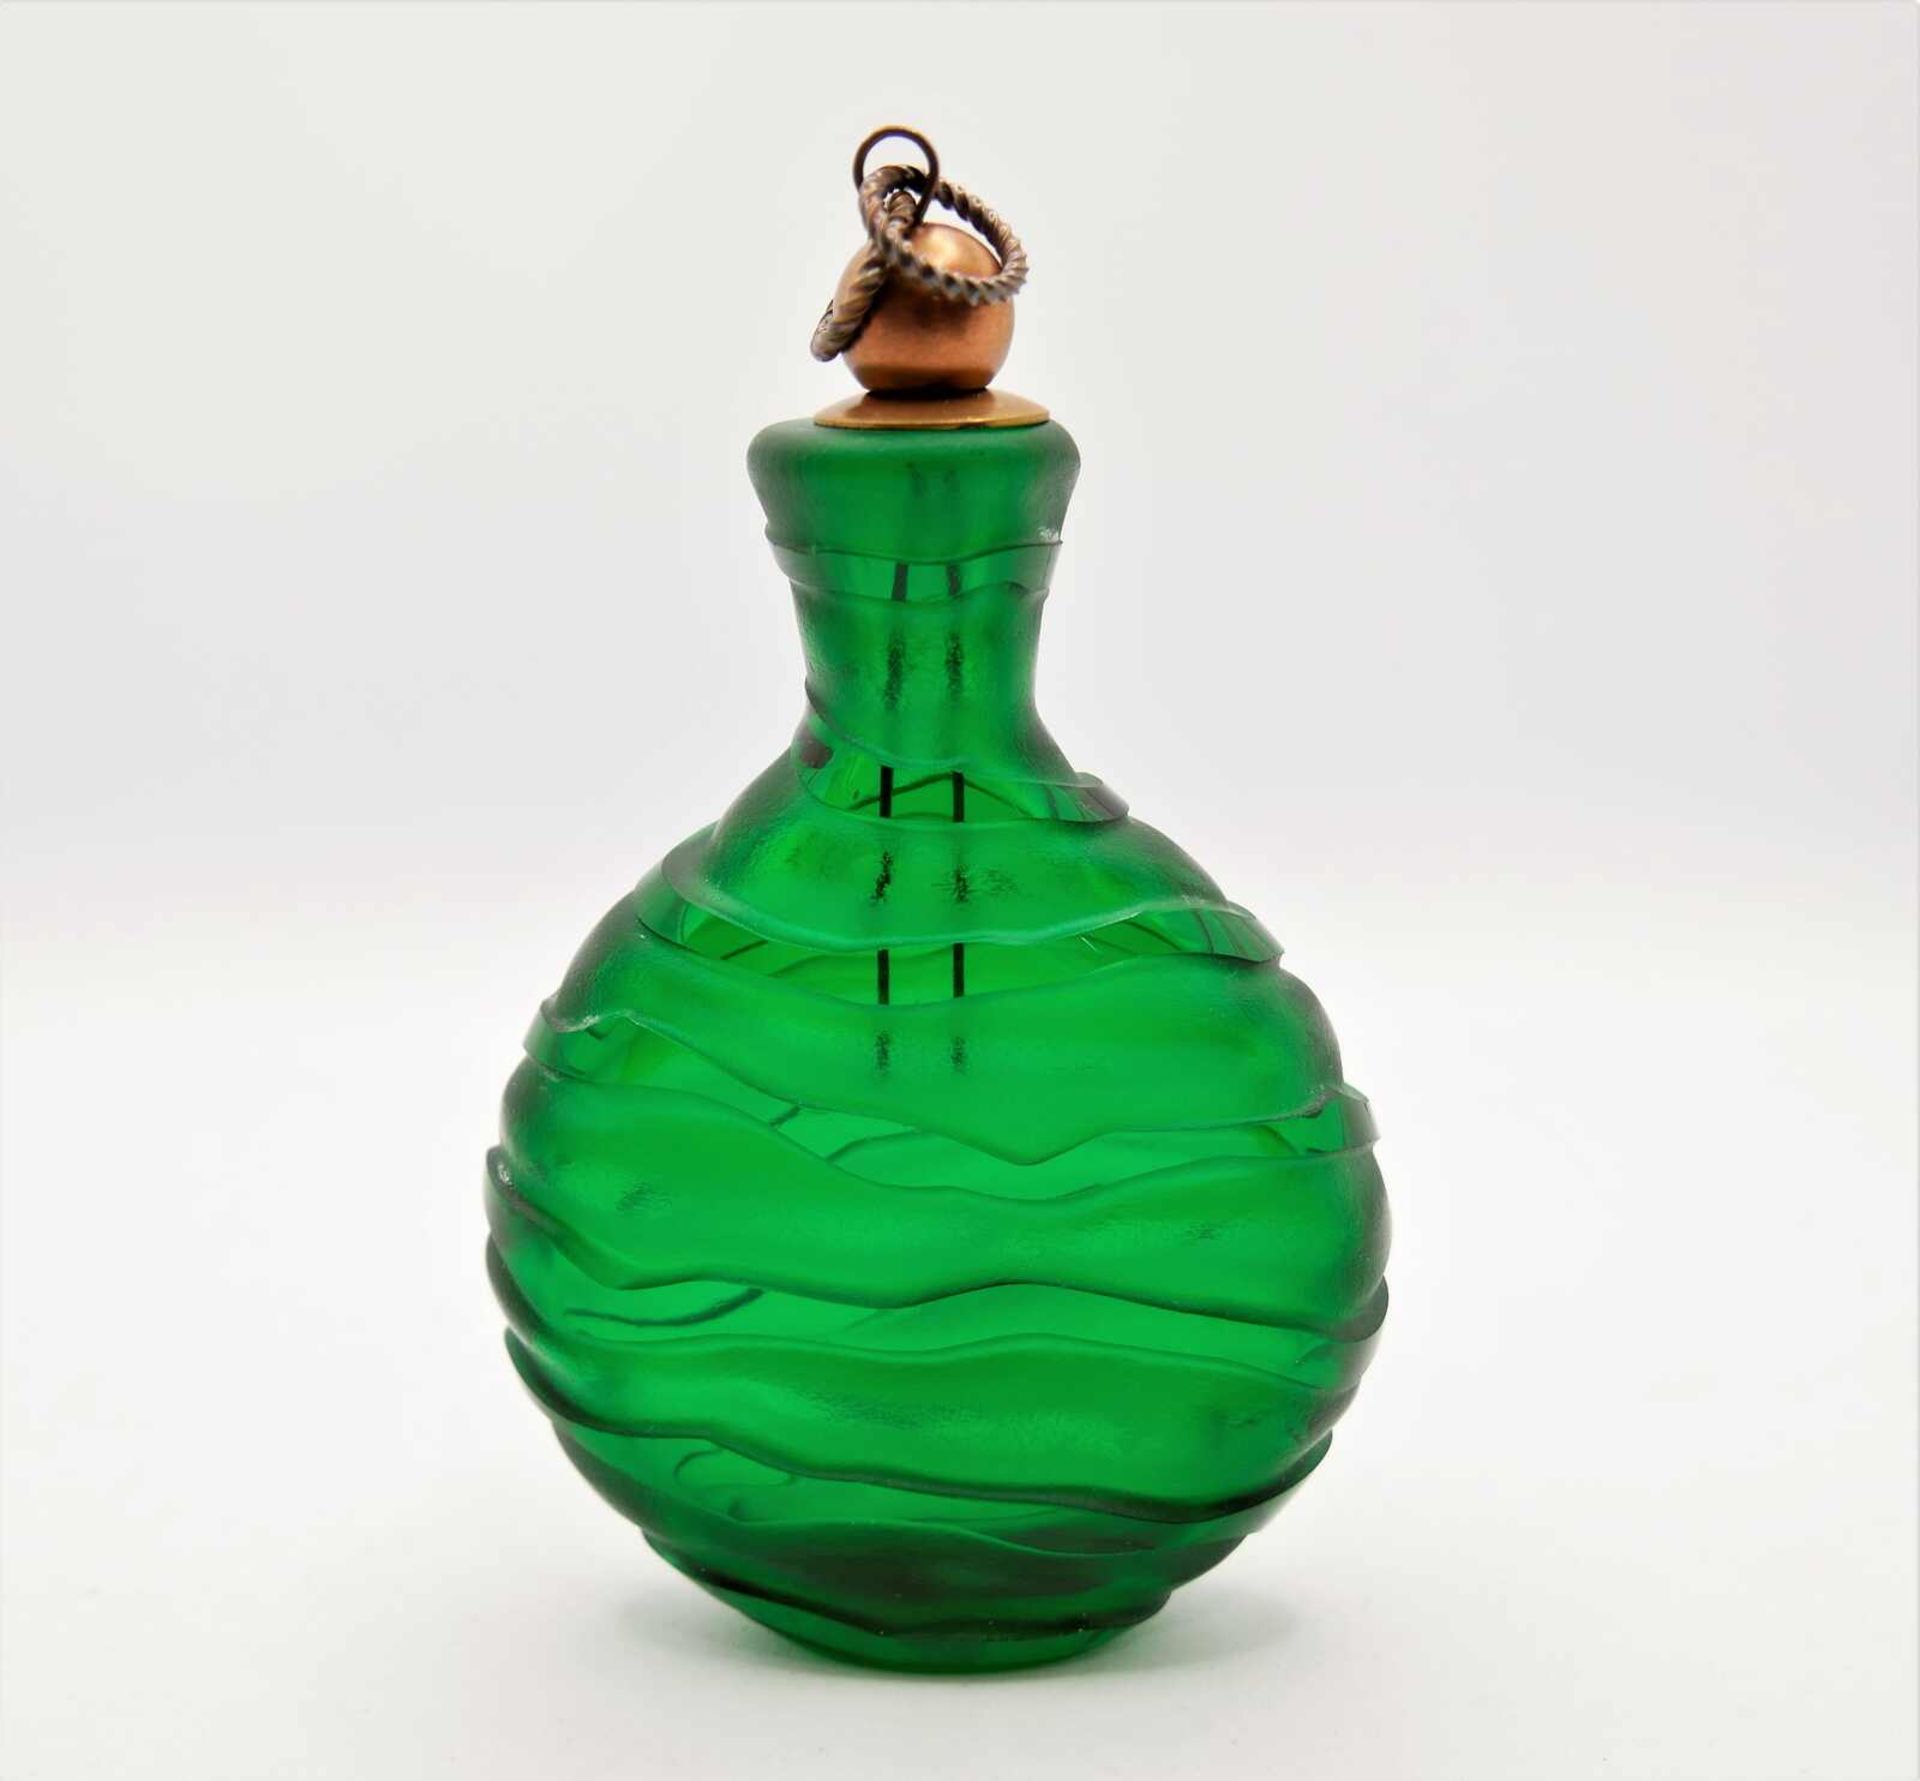 Schnupftabakflasche Glas aus Sammlung, Bixl, grün, mit Stöpsel. Bayrischer Wald. Höhe ca. 13 cm. - Image 2 of 2